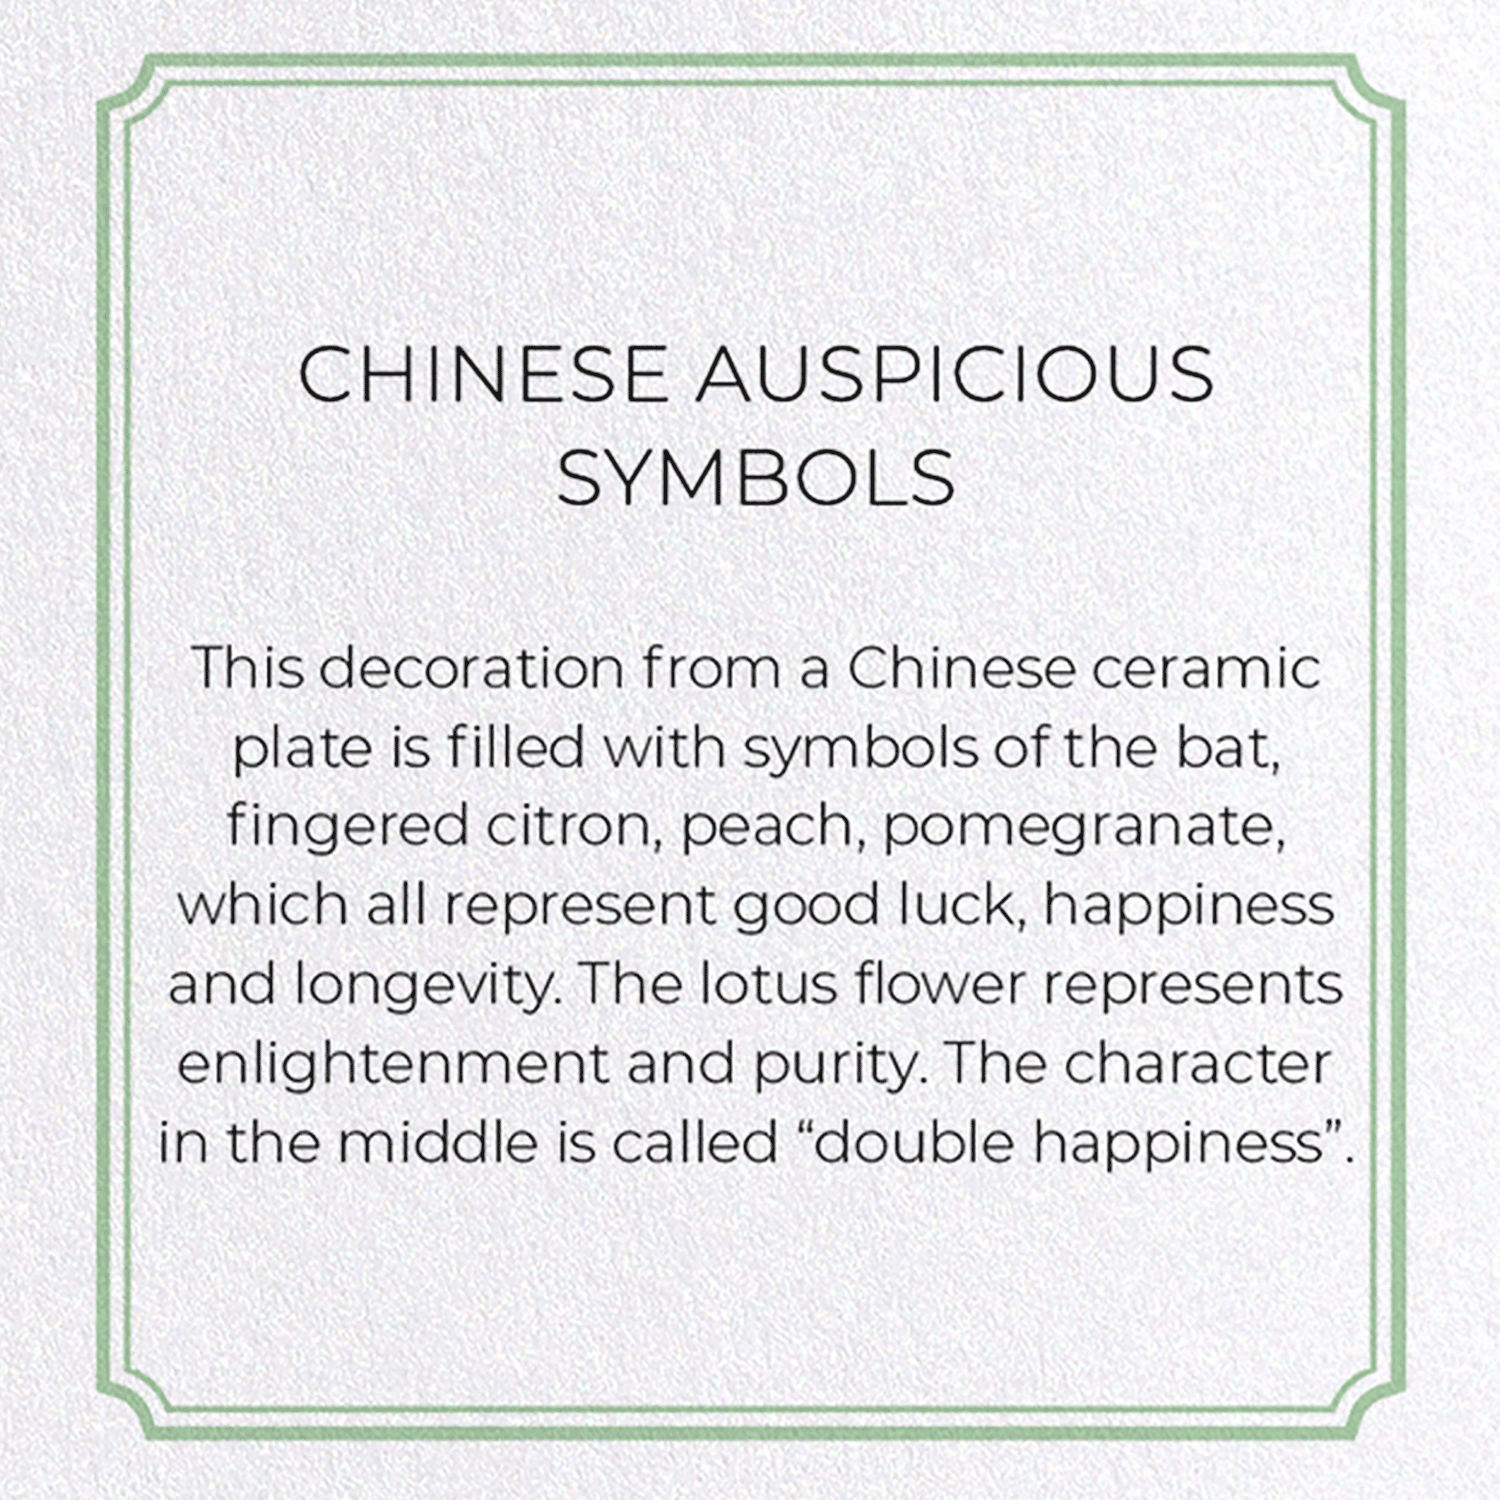 CHINESE AUSPICIOUS SYMBOLS